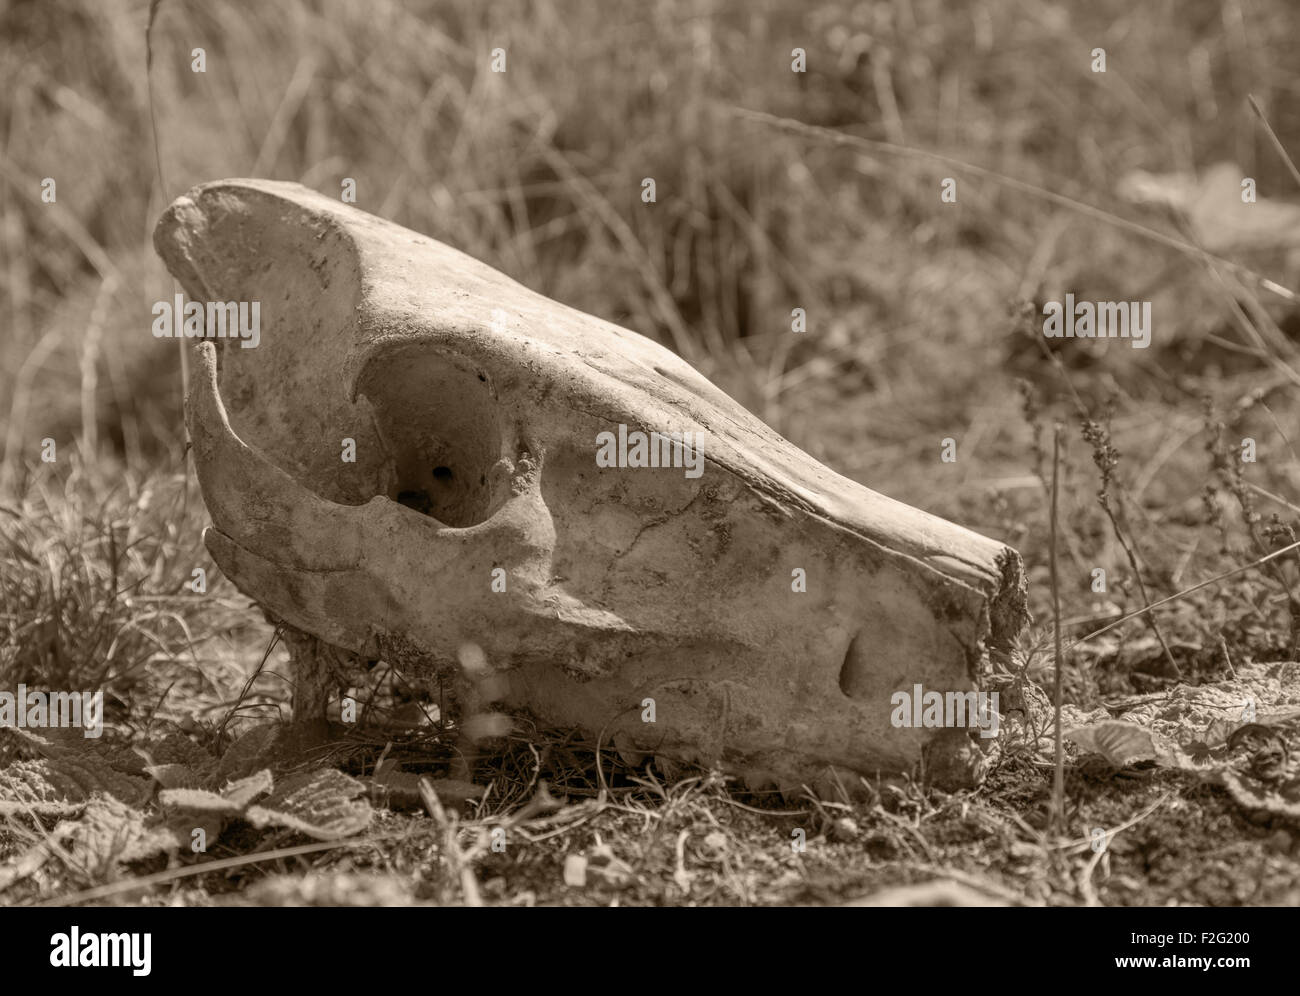 Imagen en tonos cálidos de un cerdo salvaje calavera en suelo de hierba Foto de stock